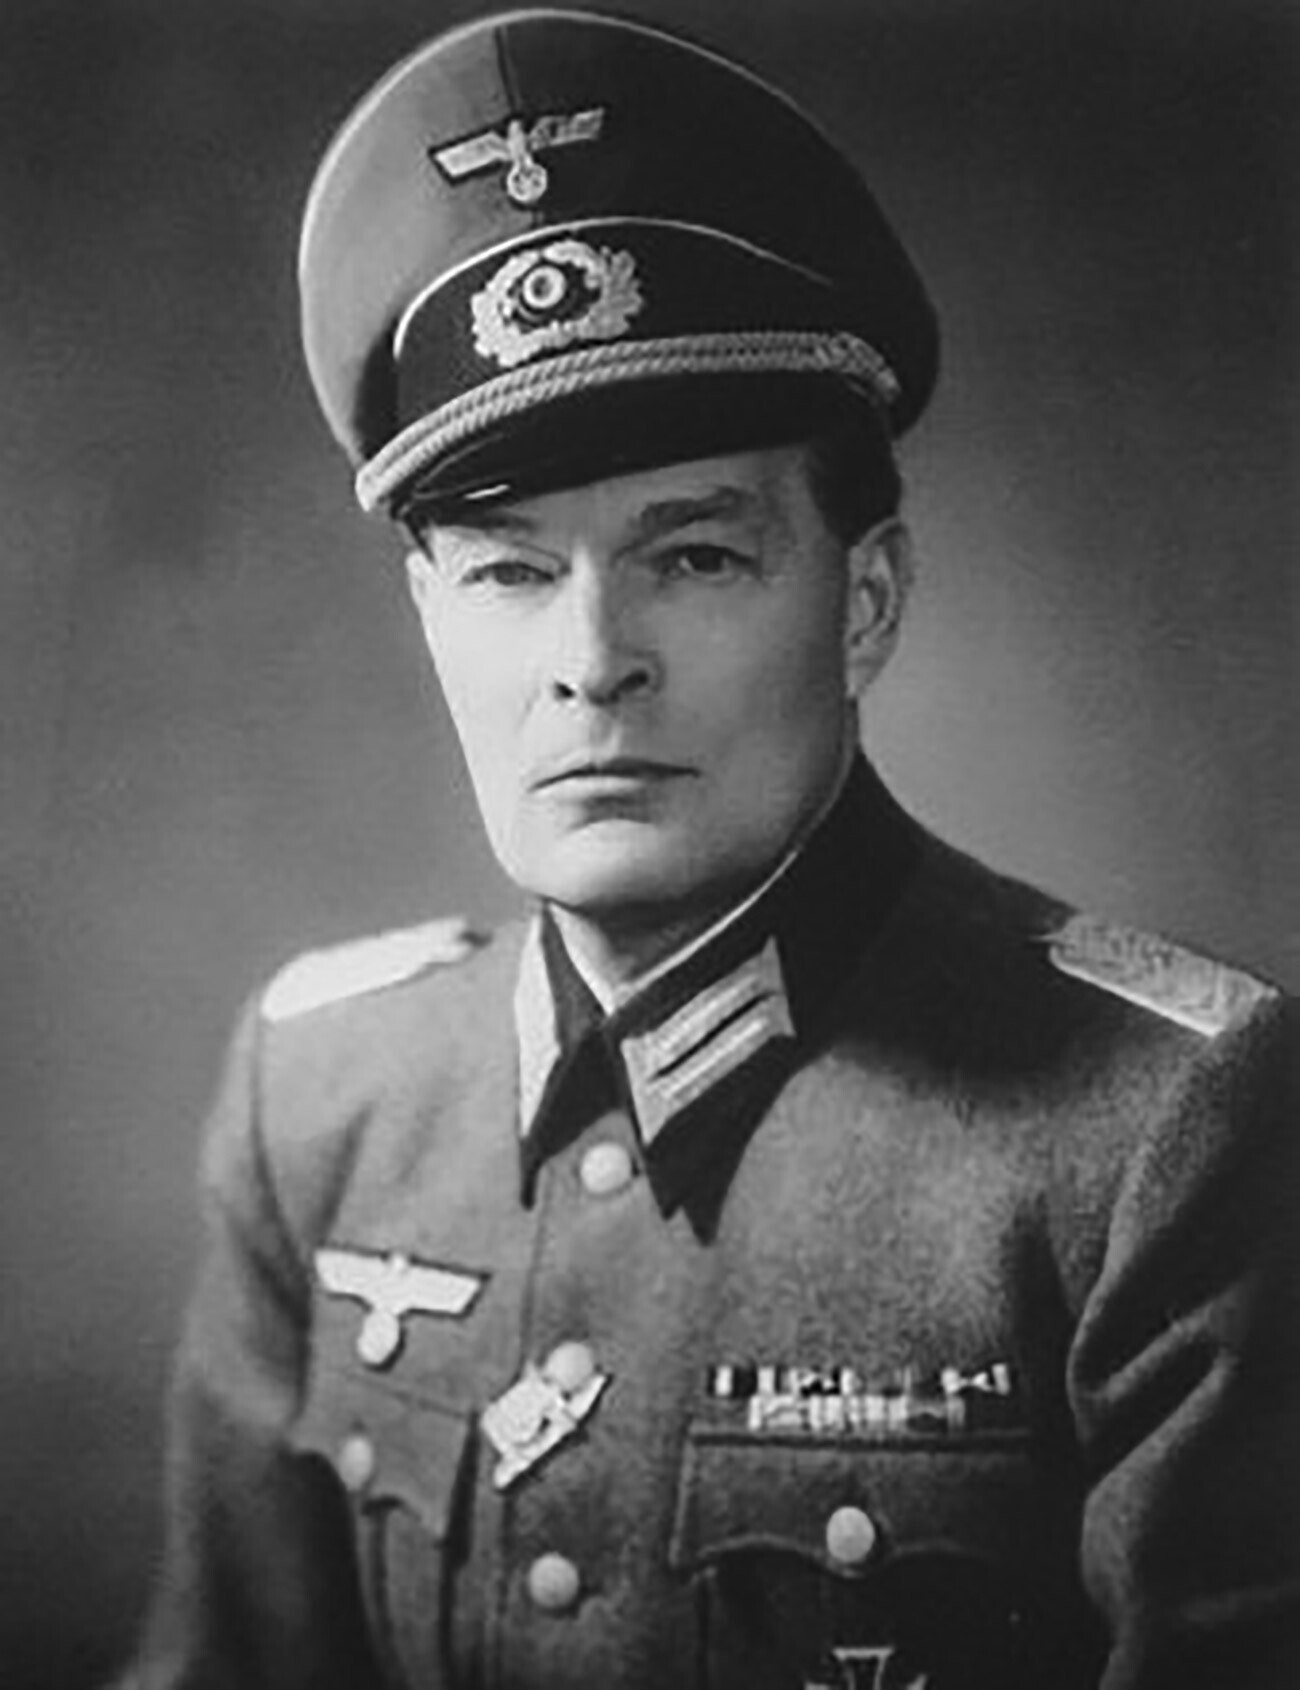 Georg-Michael Alexander von Merenberg em uniforme da Wehrmacht, em torno de 1944